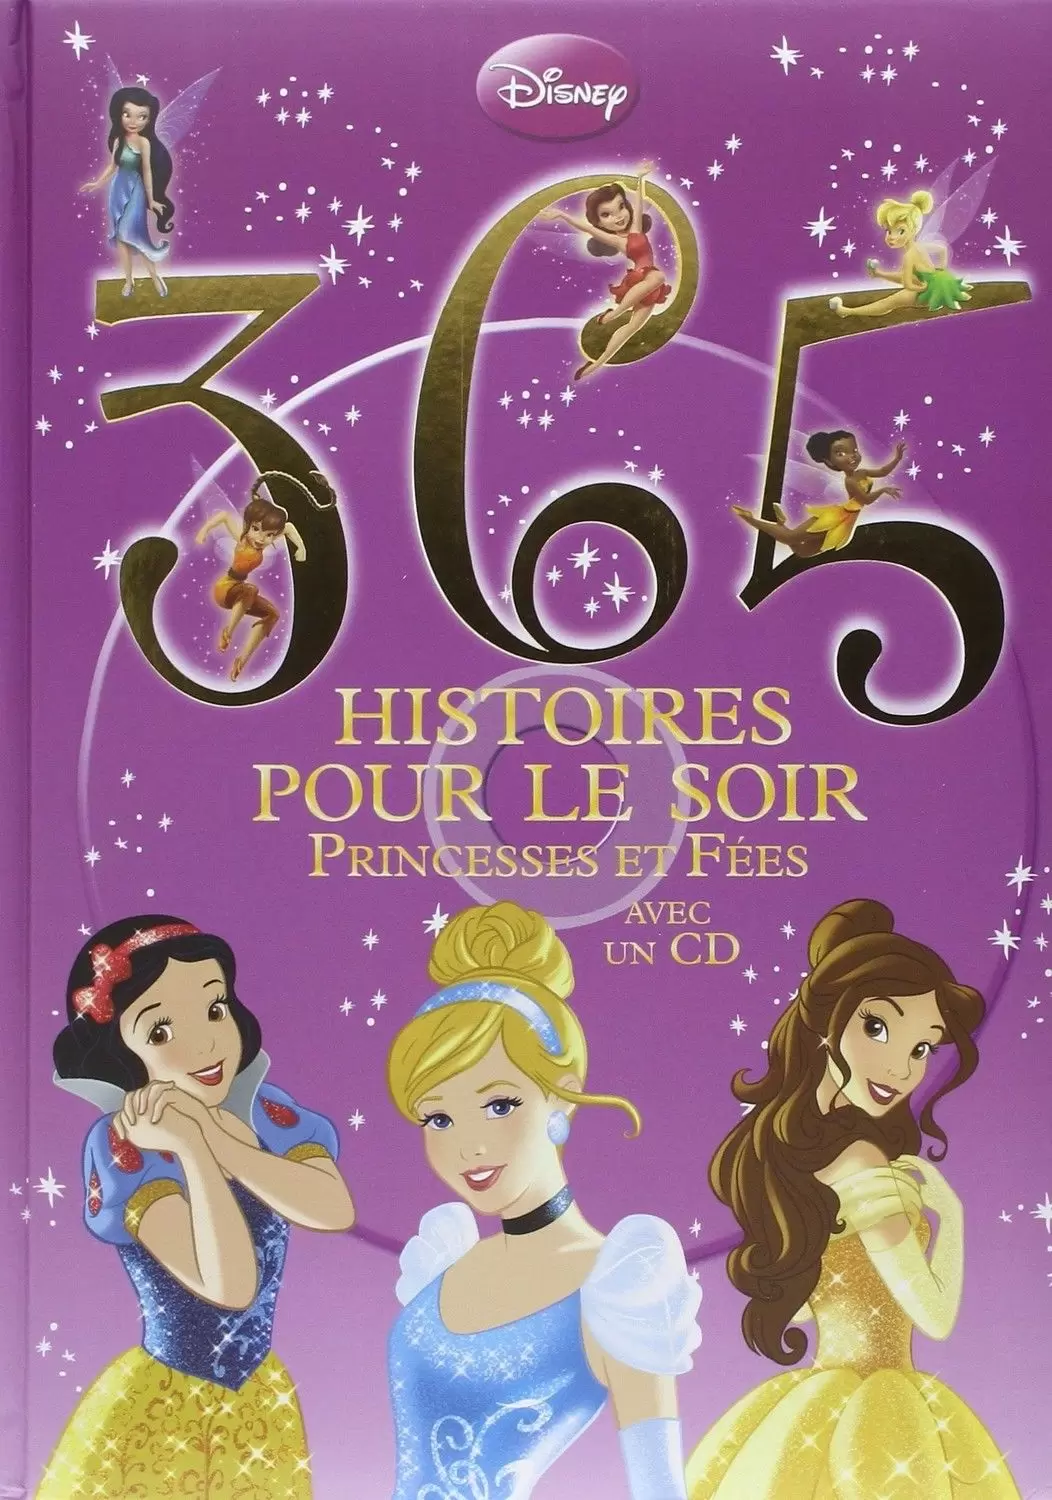 Disney - Histoires pour le soir et pour la semaine - 365 Histoires pour le soir - Princesses et fées avec 1 CD